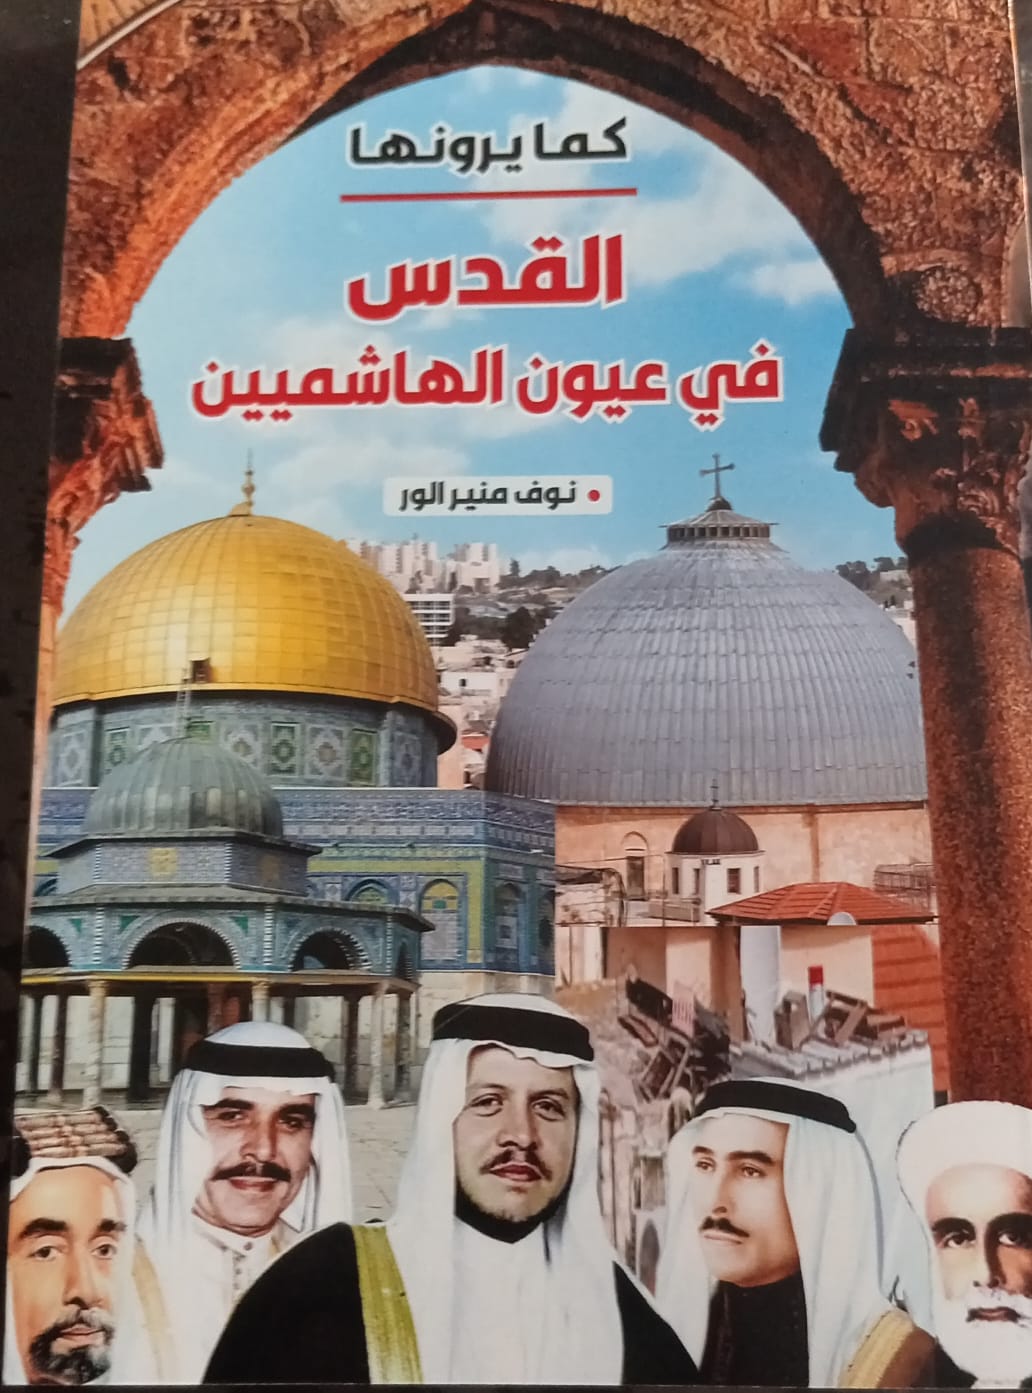   " القدس في عيون الهاشميين"  كتاب جديد للزميلة نوف الورّ